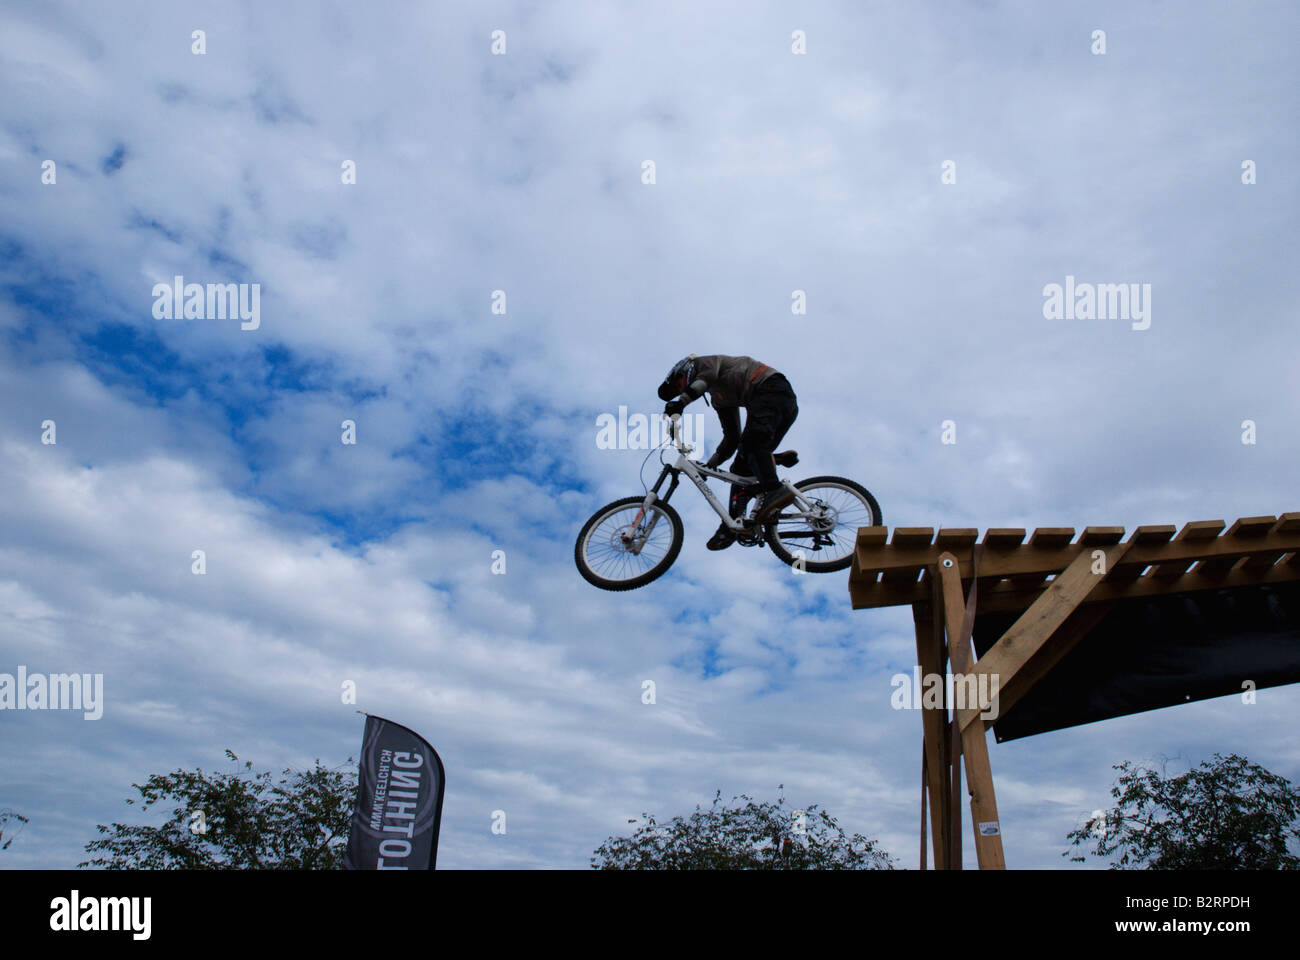 Jeune homme / adolescent saute d'une plate-forme équitation un vélo de montagne à une exposition d'équitation. Banque D'Images